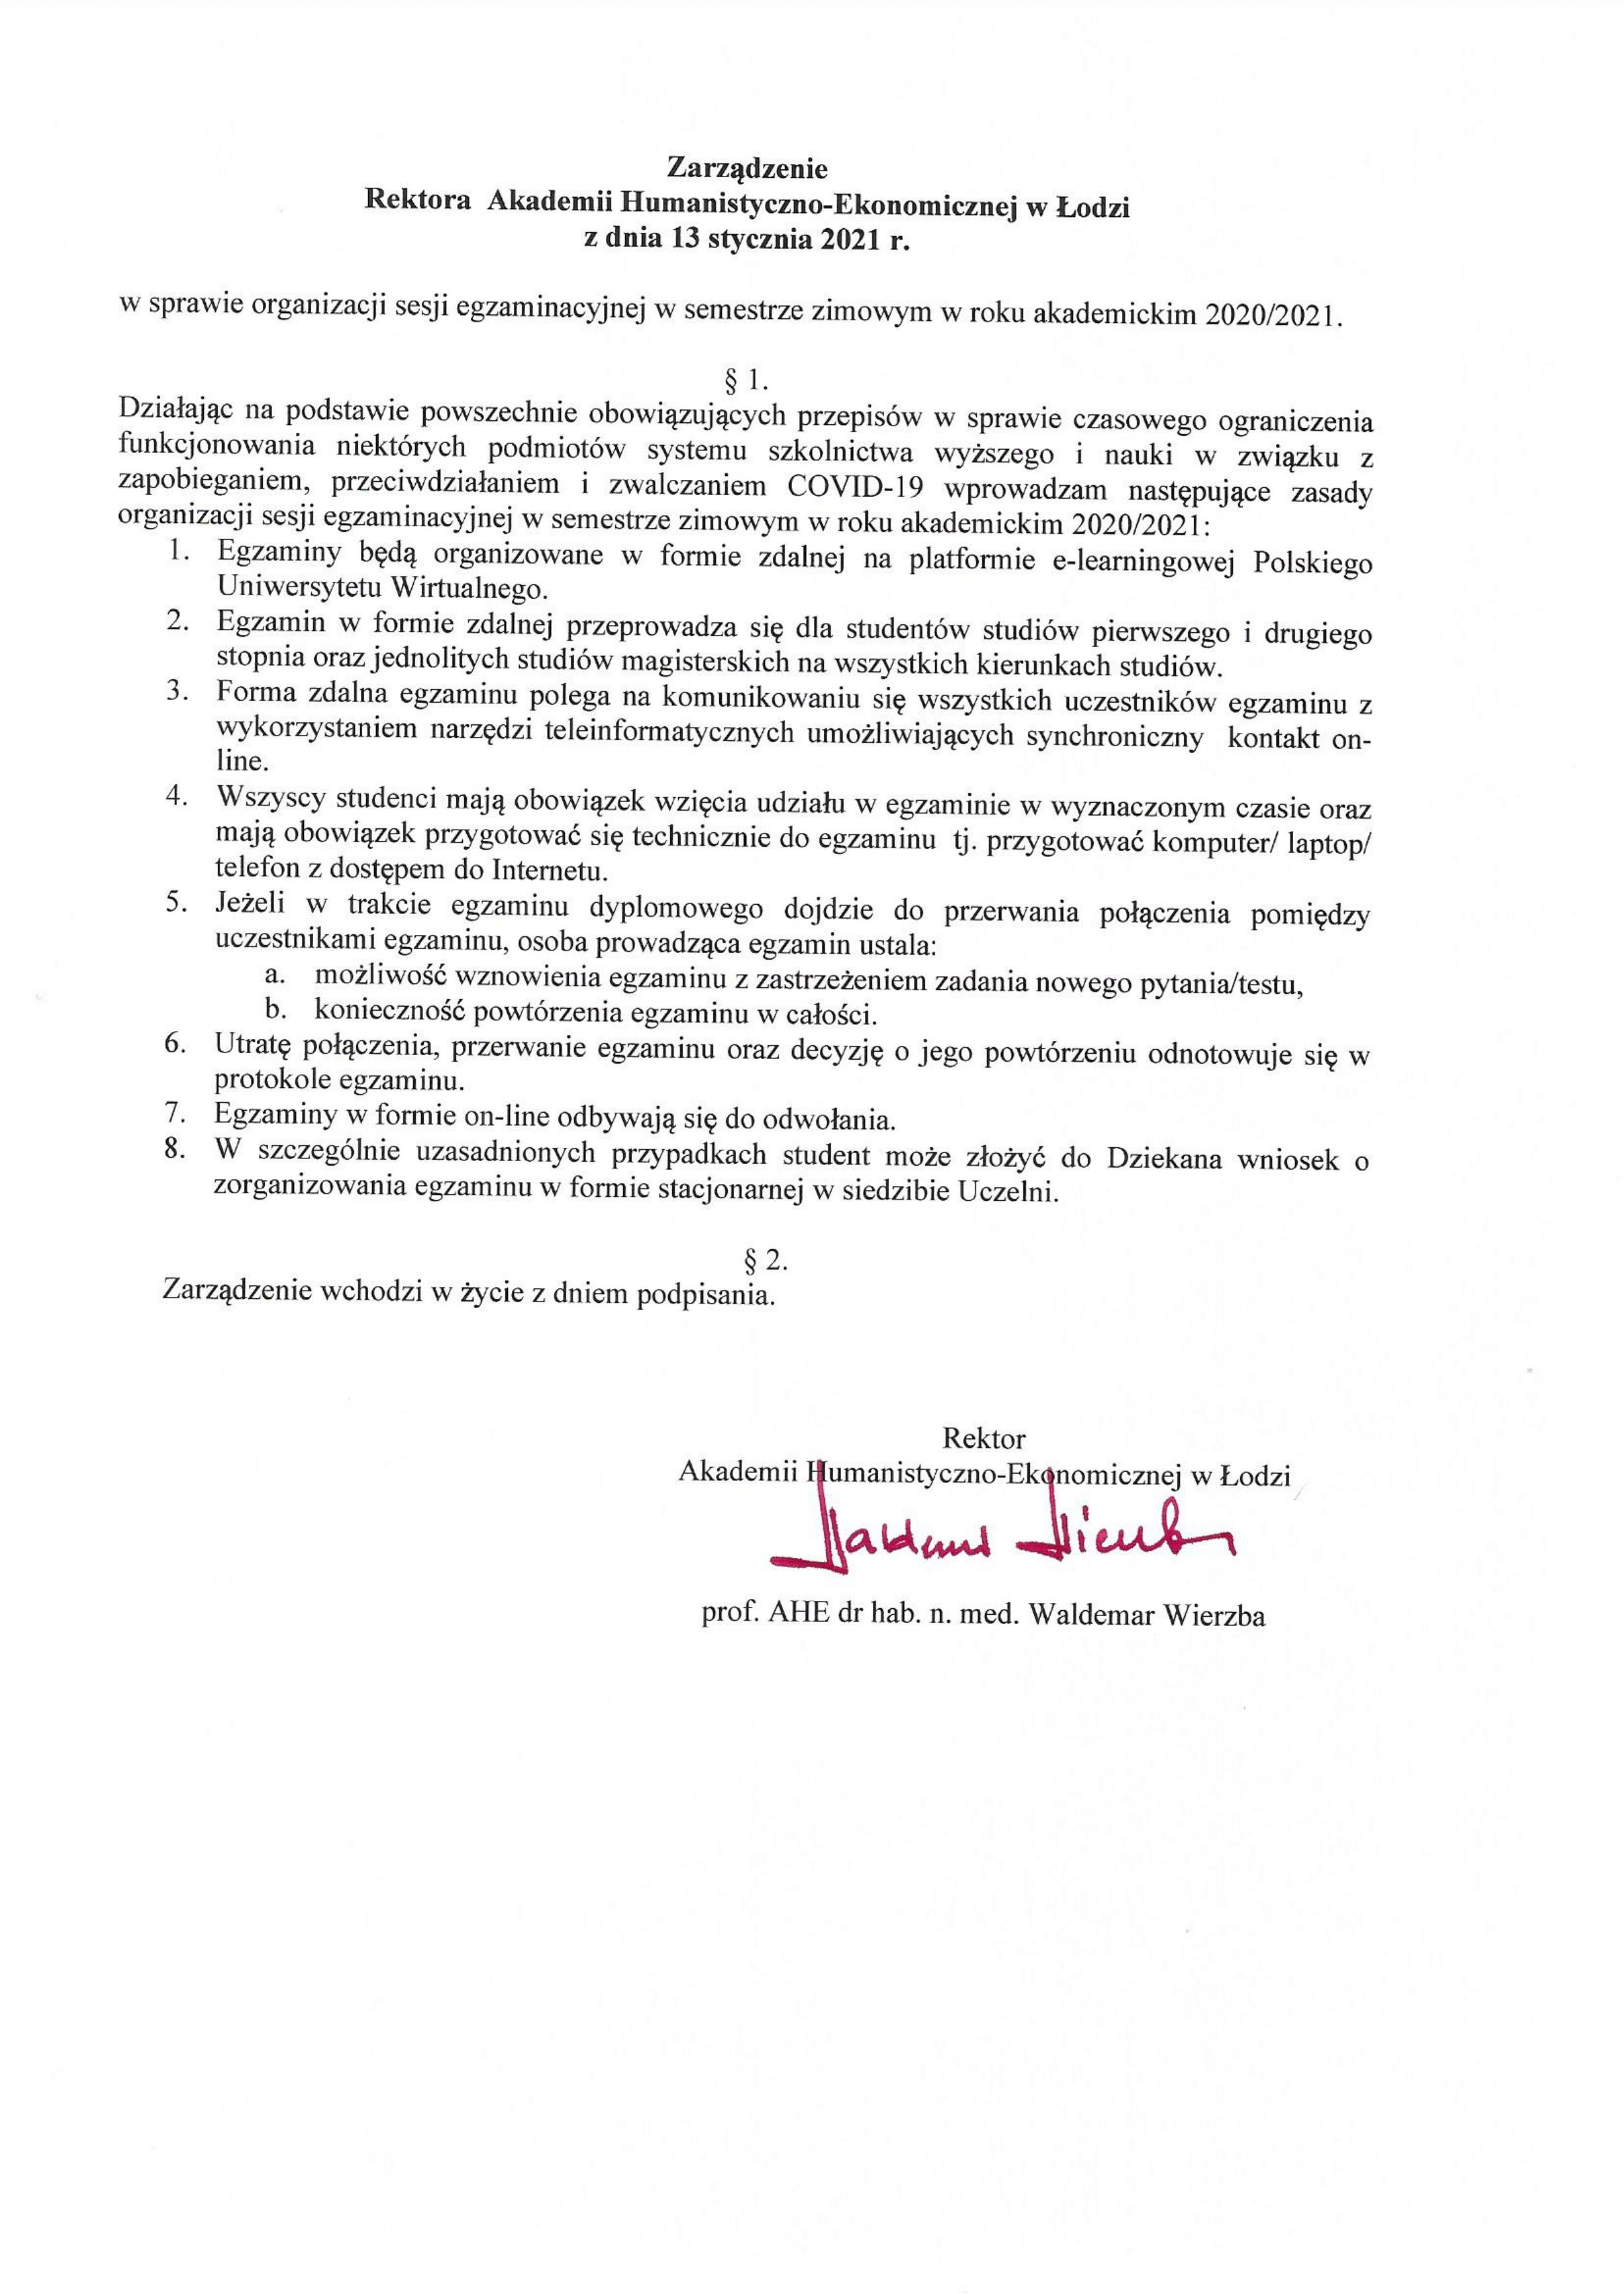 Zarządzenia Rektora dot. sesji i organizacji zajęć dydaktycznych